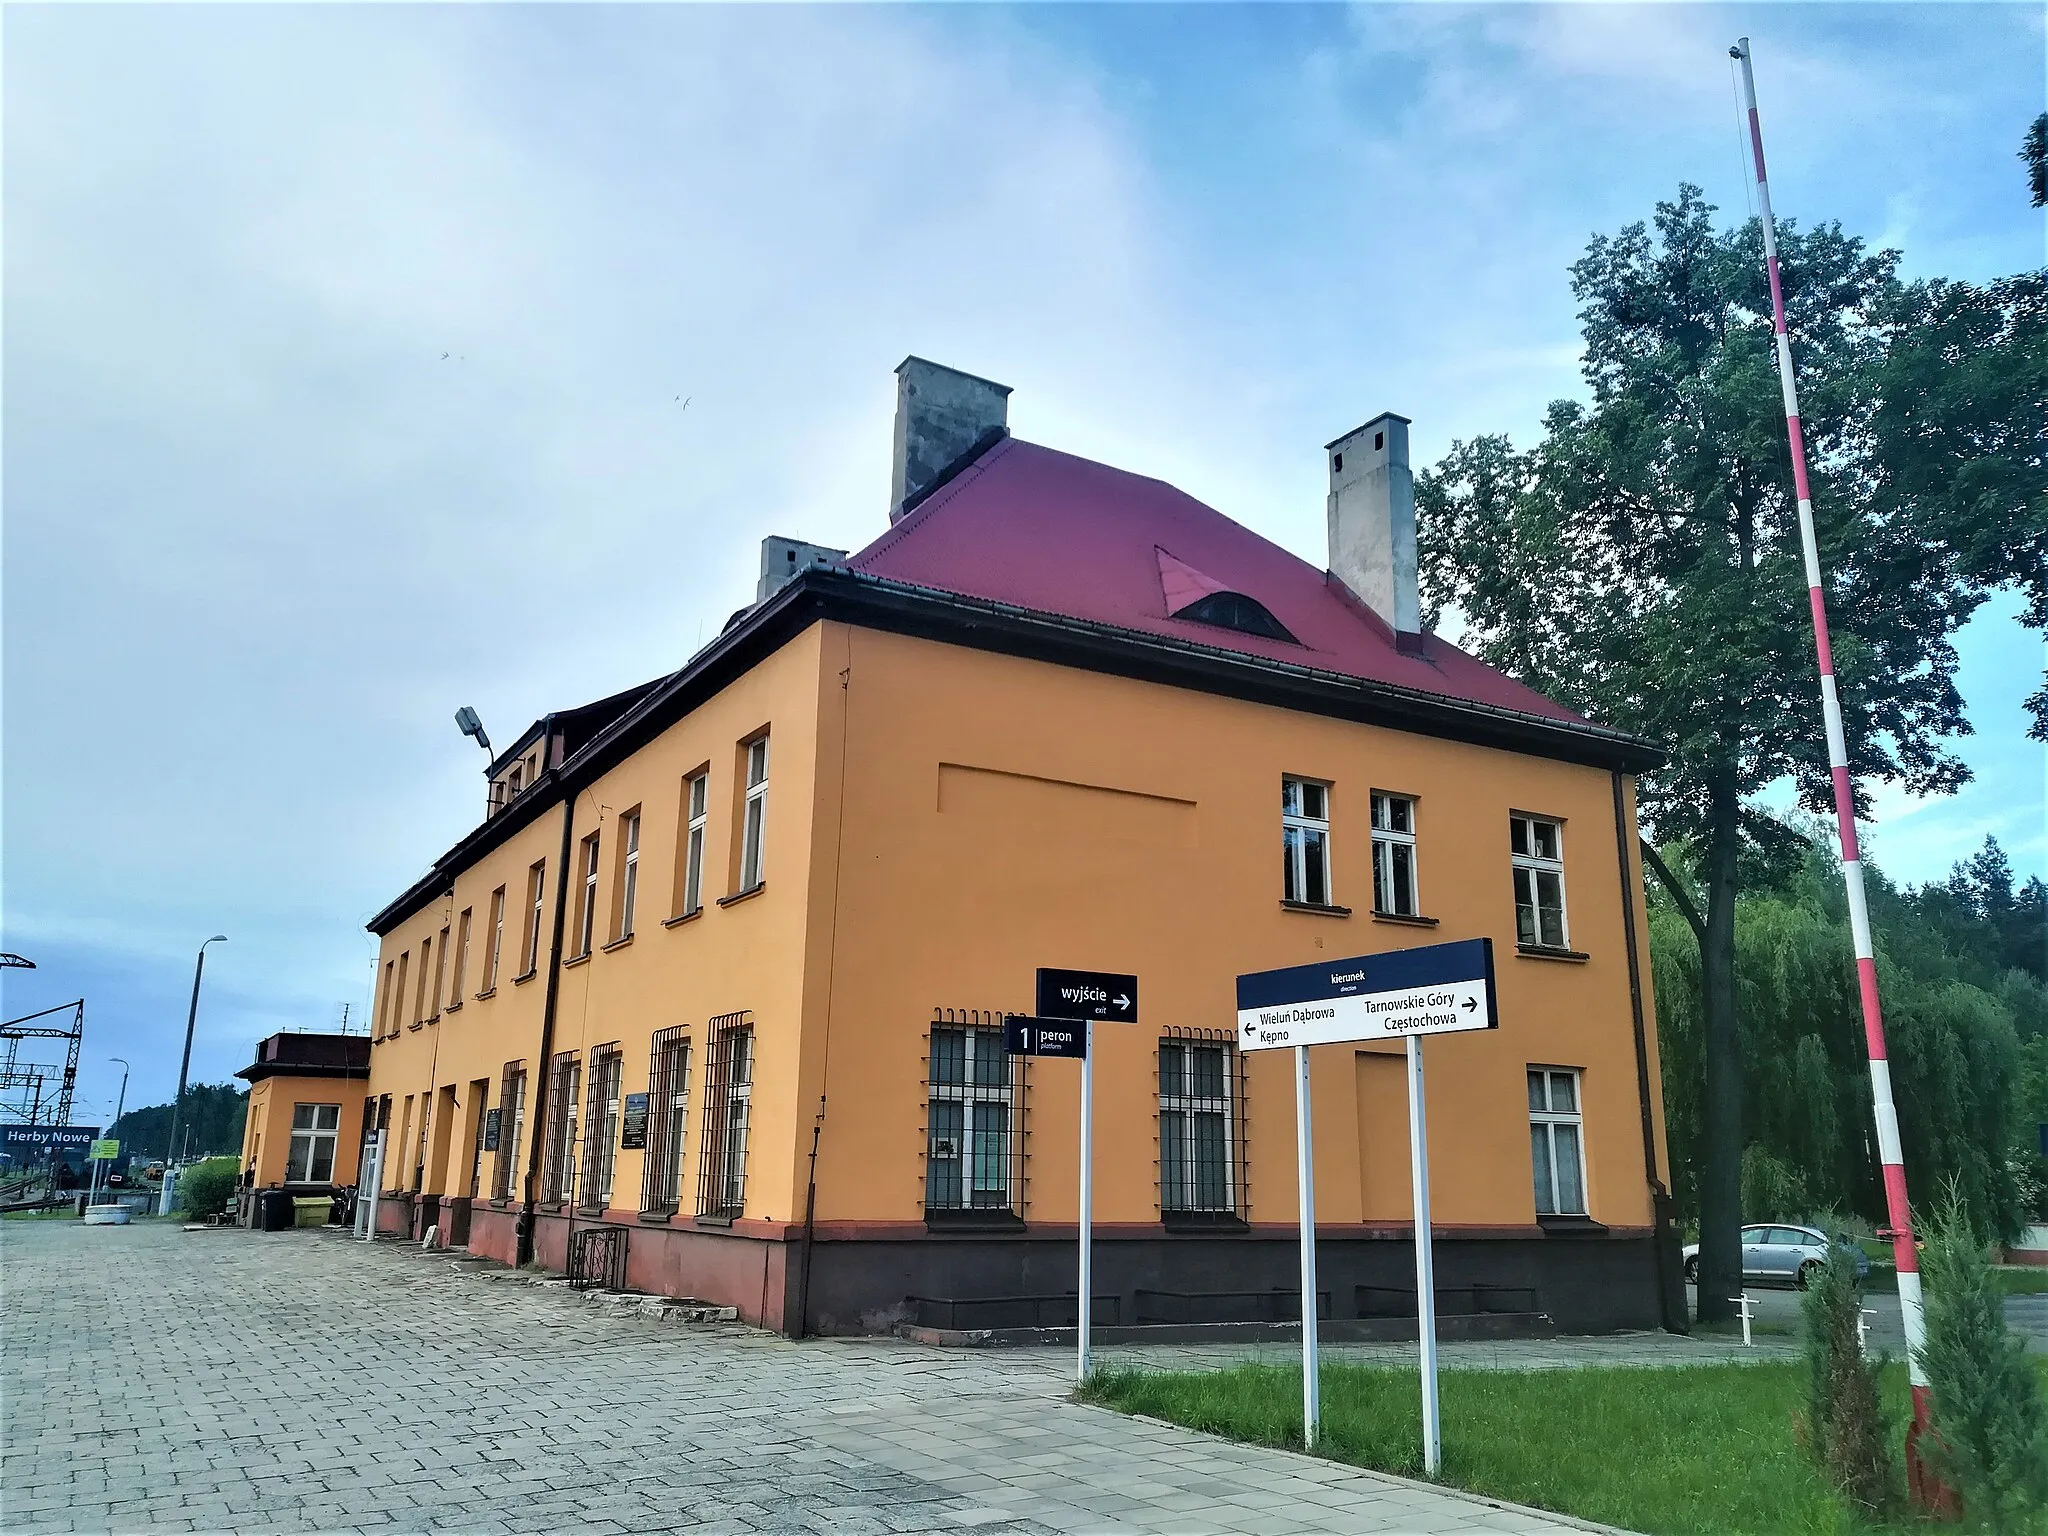 Photo showing: Stacja kolejowa Herby Nowe.